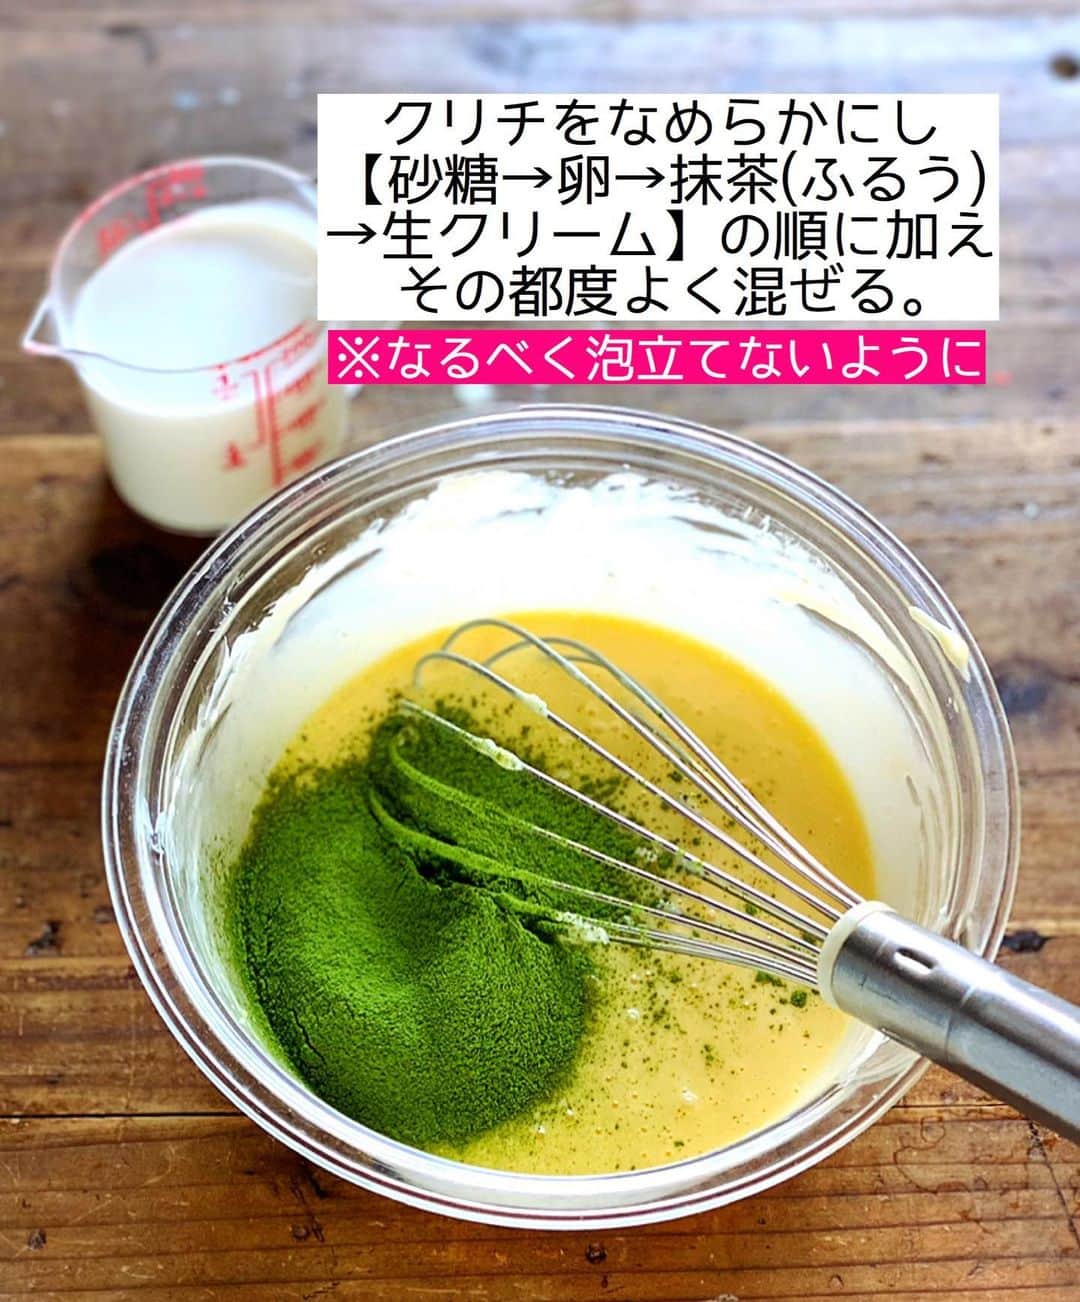 Mizuki【料理ブロガー・簡単レシピ】さんのインスタグラム写真 - (Mizuki【料理ブロガー・簡単レシピ】Instagram)「・﻿ 【#レシピ 】ーーーーーーーー﻿ ♡抹茶バスクチーズケーキ♡﻿ ーーーーーーーーーーーーーー﻿ ﻿ ﻿ ﻿ おはようございます(*^^*)﻿ ﻿ 2021年初レシピは﻿ \\ 抹茶バスクチーズケーキ //﻿ ﻿ まろやかでクリーミーな生地に﻿ 濃厚な抹茶風味が相性抜群♡﻿ もちろん混ぜて焼くだけ！の﻿ 超〜簡単レシピです(*´艸`)﻿ ﻿ 今回は丸型で焼きましたが﻿ マフィン型やパウンド型でも﻿ 作ることができますよ〜♩﻿ ↓﻿ ［マフィン型→220度、上段20〜25分］﻿ ［パウンド型→220度、下段か中段35分］﻿ ﻿ お正月のおやつにもぴったりなので﻿ よかったらお試し下さいね(*^^*)﻿ ﻿ ﻿ ﻿ ＿＿＿＿＿＿＿＿＿＿＿＿＿＿＿＿＿＿＿＿﻿ 【15cm底取れ型】﻿ クリームチーズ...200g﻿ 砂糖...60g﻿ 卵...2個﻿ 抹茶パウダー...大1.5﻿ 生クリーム...150ml﻿ ﻿ (準備)クリームチーズは常温に戻す。クッキングシートをクシャクシャにして型に敷く。オーブンを220度に予熱する。﻿ 1.ボウルにクリームチーズを入れてなめらかにし、砂糖→卵→抹茶(ふるう)→生クリームの順に加え、その都度よく混ぜる(なるべく泡立てないように)。﻿ 2.型に注ぎ、予熱したオーブンで35分焼く。焼けたらアミにのせて冷まし、冷蔵庫で一晩冷やす。﻿ ￣￣￣￣￣￣￣￣￣￣￣￣￣￣￣￣￣￣￣￣﻿ ﻿ ﻿ ﻿ ﻿ 《ポイント》﻿ ♦︎クリームチーズはレンジで30〜40秒加熱すると柔らかくなります♩﻿ ♦︎生地の材料を混ぜる時はなるべく泡立てないようにして下さい♩﻿ ♦︎しっかり一晩冷やして下さい♩﻿ ﻿ ﻿ ﻿ ﻿ ﻿ ﻿ ﻿ ﻿ ﻿ 📕新刊発売中📕﻿ 【ラクしておいしい！#1品晩ごはん 】﻿ ￣￣￣￣￣￣￣￣￣￣￣￣￣￣￣￣￣﻿ 私たちだってヘトヘトな日がある•••﻿ 毎日何品も作っていられない•••﻿ もうごはんに悩みたくない😢﻿ そんな時、1品ごはんはいかがでしょう？﻿ というご提案です✨﻿ ﻿ 【1品ごはん】は﻿ 副菜いらずで全てがシンプル！﻿ ￣￣￣￣￣￣￣￣￣￣￣￣￣￣￣￣￣￣﻿ 一品つくるだけでいいから﻿ 献立を考えなくてよし！﻿ ￣￣￣￣￣￣￣￣￣￣￣￣￣￣￣￣￣￣﻿ 悩まない、疲れない、﻿ 気力や時間がなくてもなんとかなる！﻿ ￣￣￣￣￣￣￣￣￣￣￣￣￣￣￣￣￣￣﻿ そんな頼りになる﻿ 便利なお助けごはんです☺️💕﻿ (ハイライトに🔗貼っています✨)﻿ ￣￣￣￣￣￣￣￣￣￣￣￣￣￣￣￣￣﻿ ﻿ ﻿ ﻿ ﻿ ﻿ ⭐️発売中⭐️﻿ ＿＿＿＿＿＿＿＿＿＿＿＿＿＿＿＿＿＿﻿ しんどくない献立、考えました♩﻿ \15分でいただきます/﻿ 📕#Mizukiの2品献立 📕﻿ ﻿ 和食をもっとカジュアルに♩﻿ \毎日のごはんがラクになる/﻿ 📘#Mizukiの今どき和食 📘﻿ ﻿ ホケミレシピの決定版♩﻿ \はじめてでも失敗しない/﻿ 📙ホットケーキミックスのお菓子 📙﻿ ﻿ NHKまる得マガジンテキスト☆﻿ ホットケーキミックスで﻿ 📗絶品おやつ&意外なランチ📗﻿ ￣￣￣￣￣￣￣￣￣￣￣￣￣￣￣￣￣￣﻿ ﻿ ﻿ ﻿ ＿＿＿＿＿＿＿＿＿＿＿＿＿＿＿＿＿＿﻿ レシピを作って下さった際や﻿ レシピ本についてのご投稿には﻿ タグ付け( @mizuki_31cafe )して﻿ お知らせいただけると嬉しいです😊💕﻿ ￣￣￣￣￣￣￣￣￣￣￣￣￣￣￣￣￣￣﻿ ﻿ ﻿ ﻿ ﻿ #バスクチーズケーキ#バスチー#チーズケーキ#Mizuki#簡単レシピ#時短レシピ#節約レシピ#料理#フーディーテーブル#マカロニメイト#おうちごはん#デリスタグラマー#料理好きな人と繋がりたい#料理記録#おうちごはんlover#写真好きな人と繋がりたい#foodpic#cooking#recipe#lin_stagrammer#foodporn#yummy#f52grams#抹茶バスクチーズケーキm」1月2日 7時56分 - mizuki_31cafe